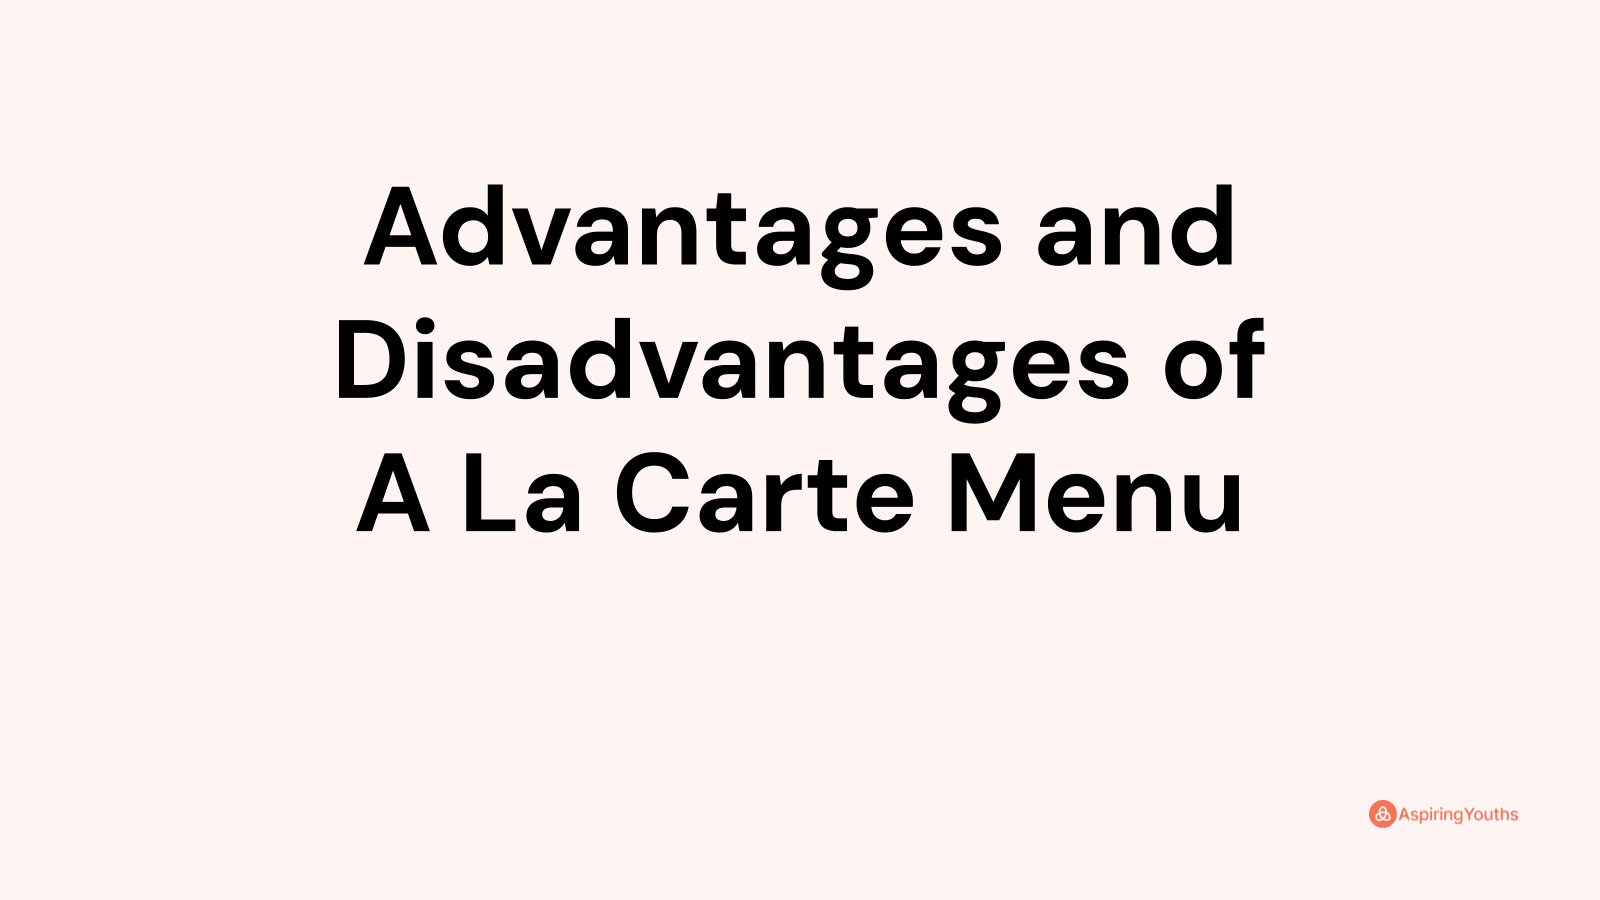 Advantages and disadvantages of A La Carte Menu